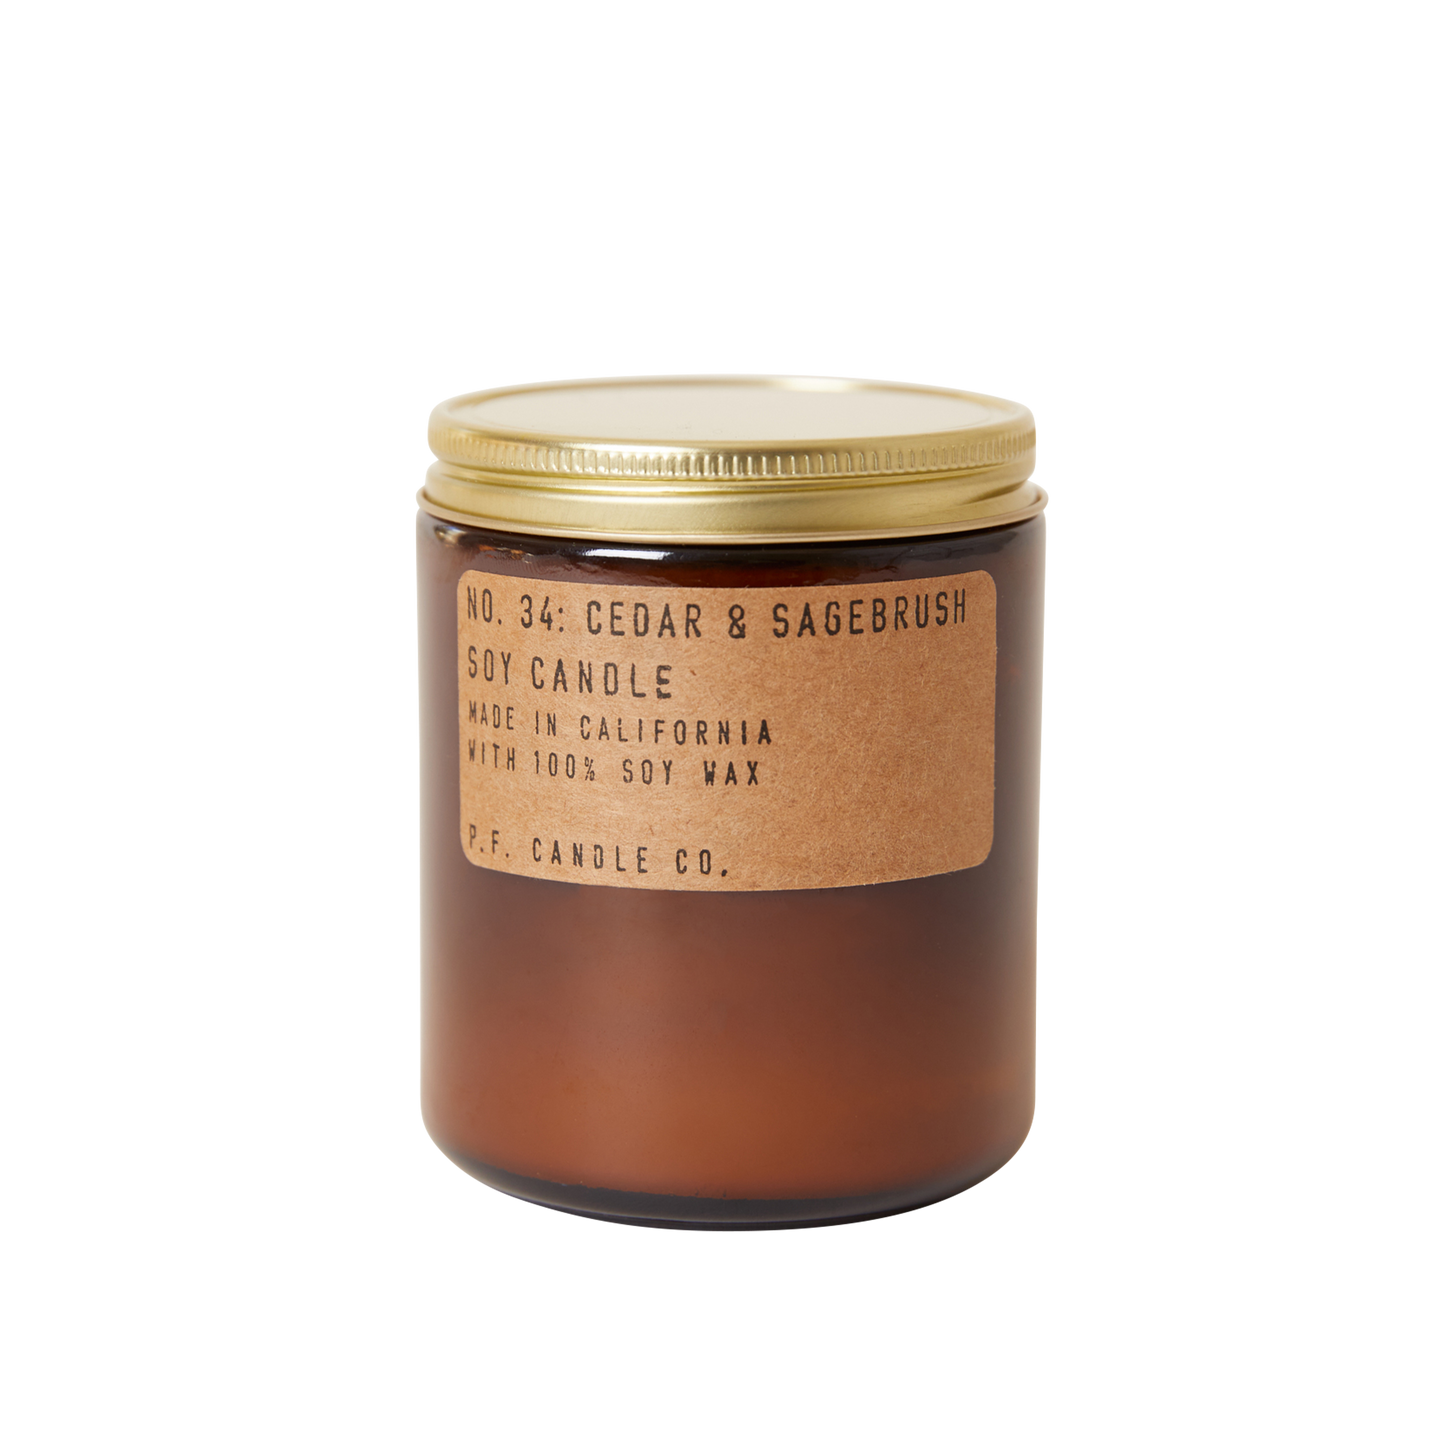 Cedar & Sagebrush - 7.2 oz Standard Soy Candle